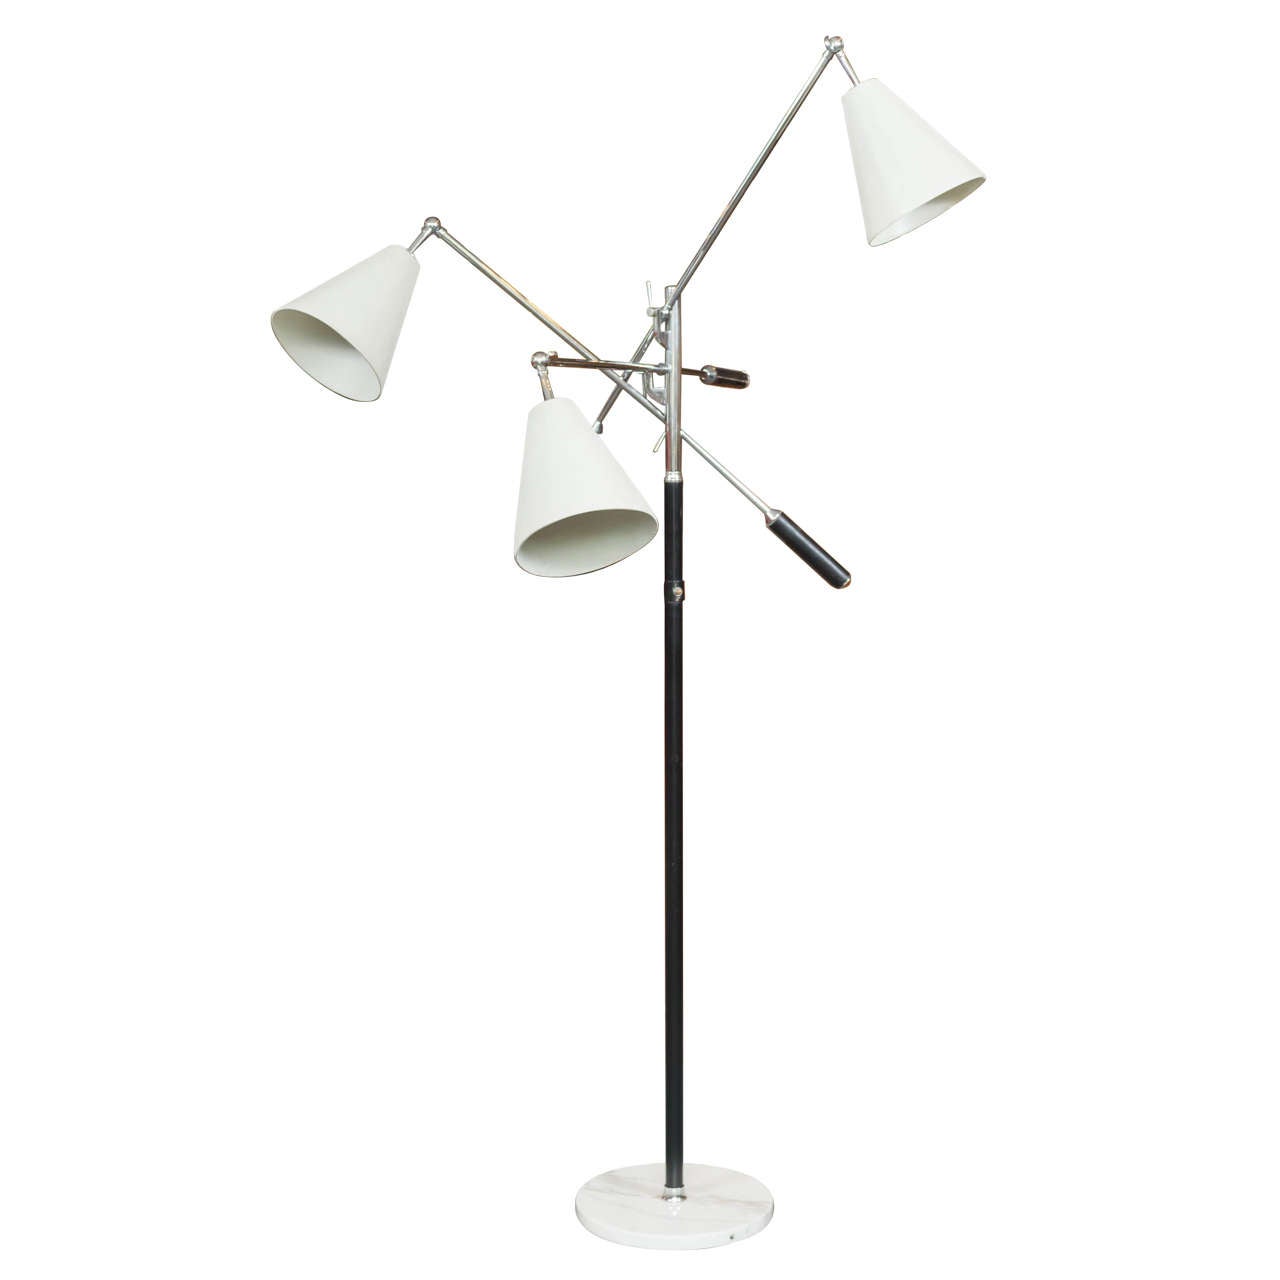 Angelo Lelli for Arredoluce Triennale Floor Lamp